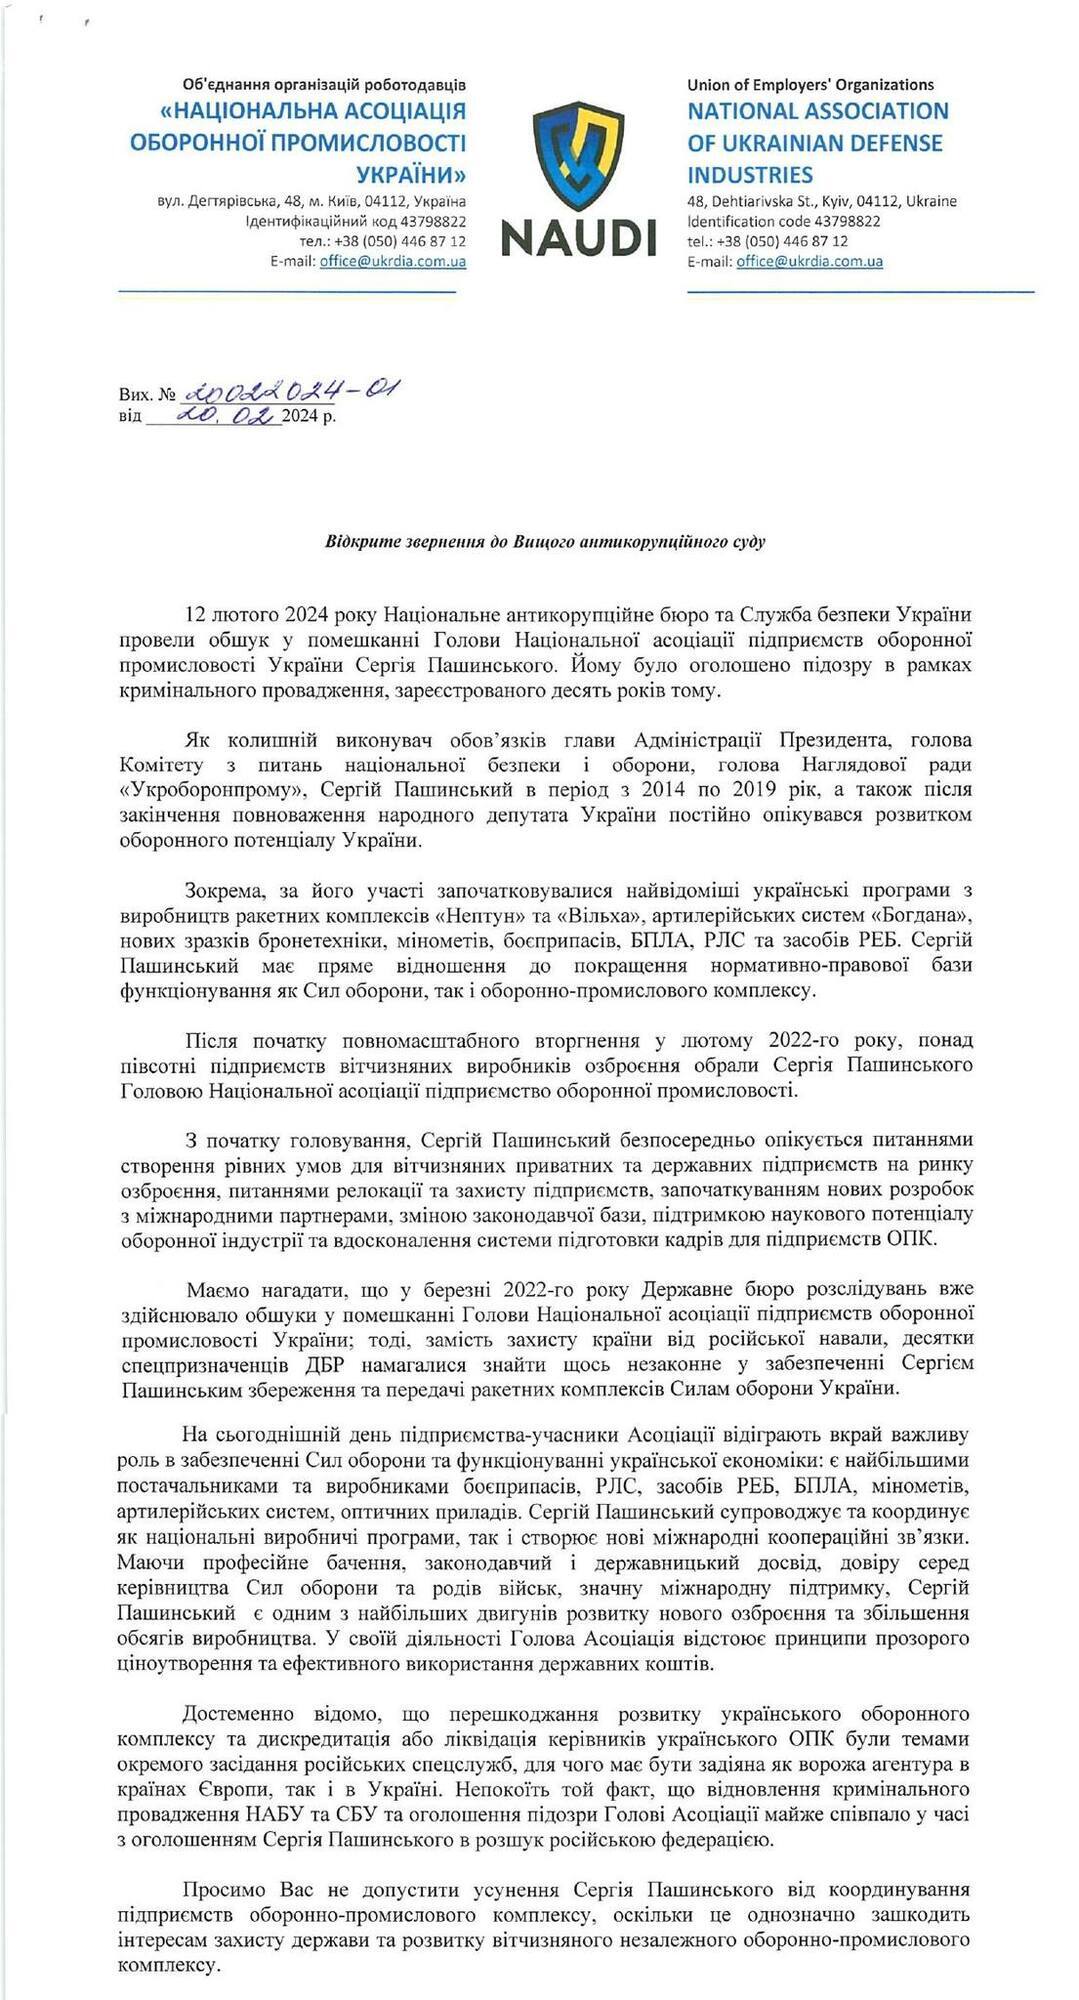 ВАСУ закликали не допустити усунення Пашинського від координування підприємств ОПК